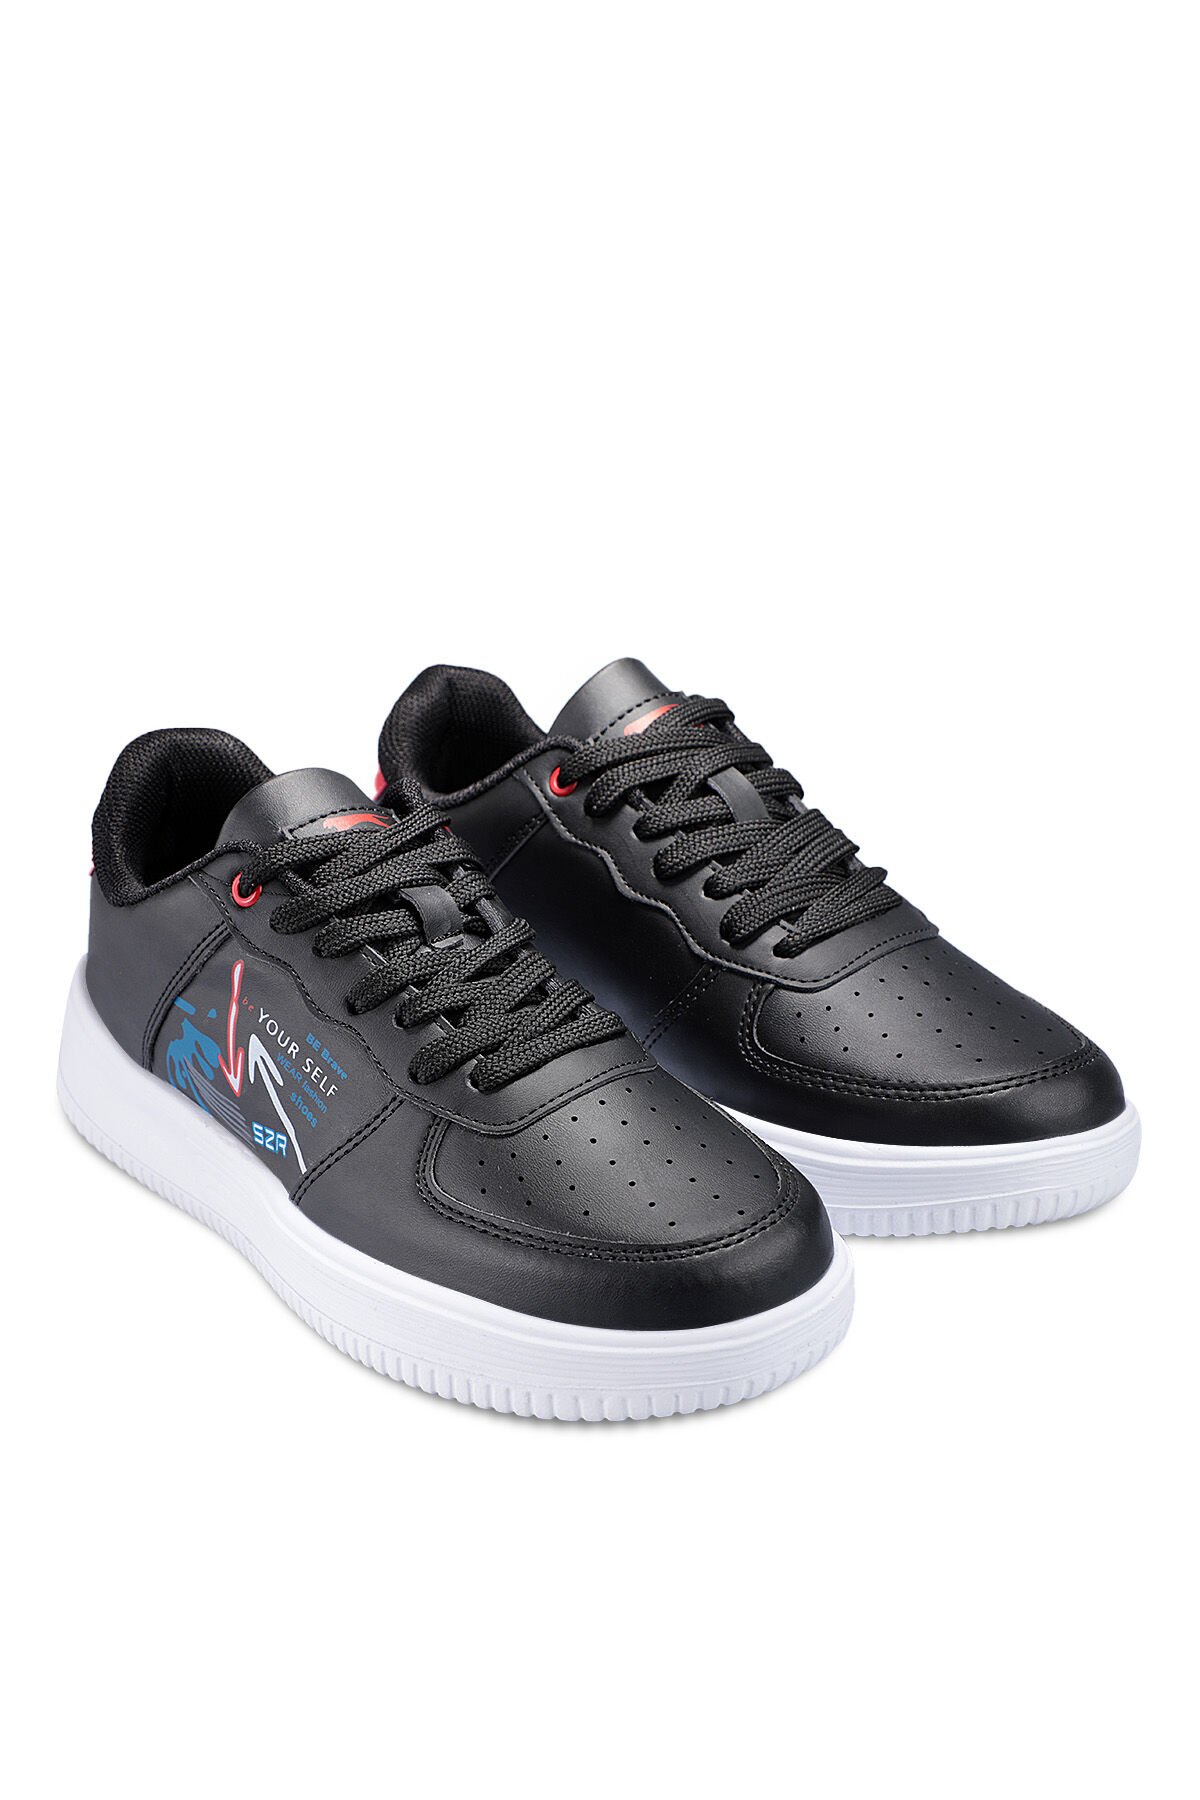 Slazenger PAAVO I Sneaker Kadın Ayakkabı Siyah / Kırmızı - Thumbnail